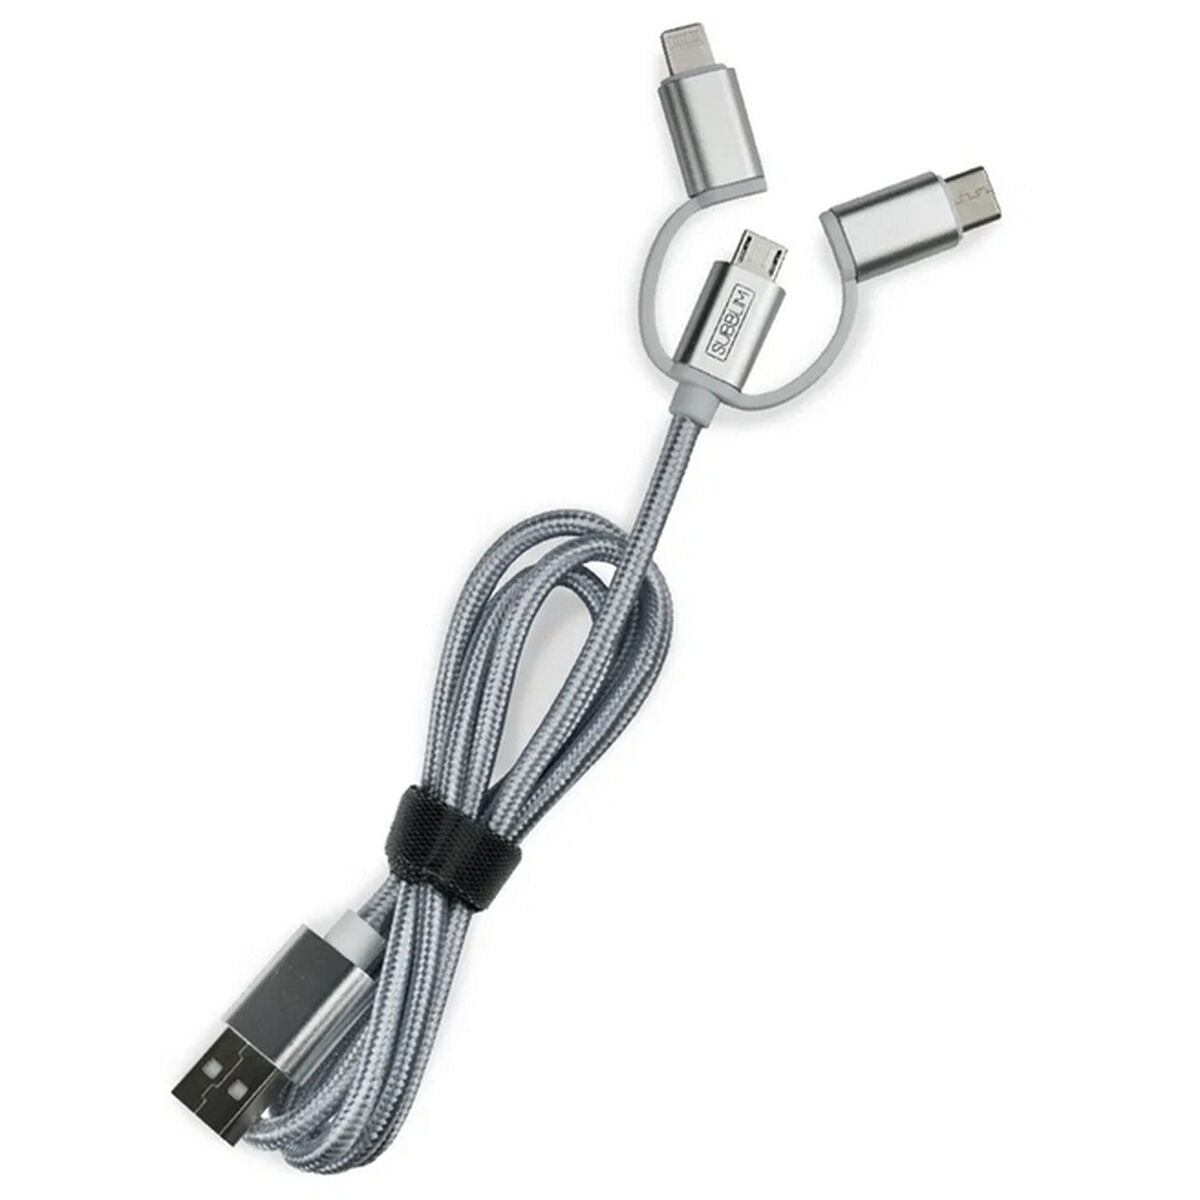 Universal USB Car Charger + USB C Cable Subblim Cargador Coche 2xUSB Διπλή φορτιστή αυτοκινήτου Alum 2.4A + Cable 3 σε 1 ασημένιο